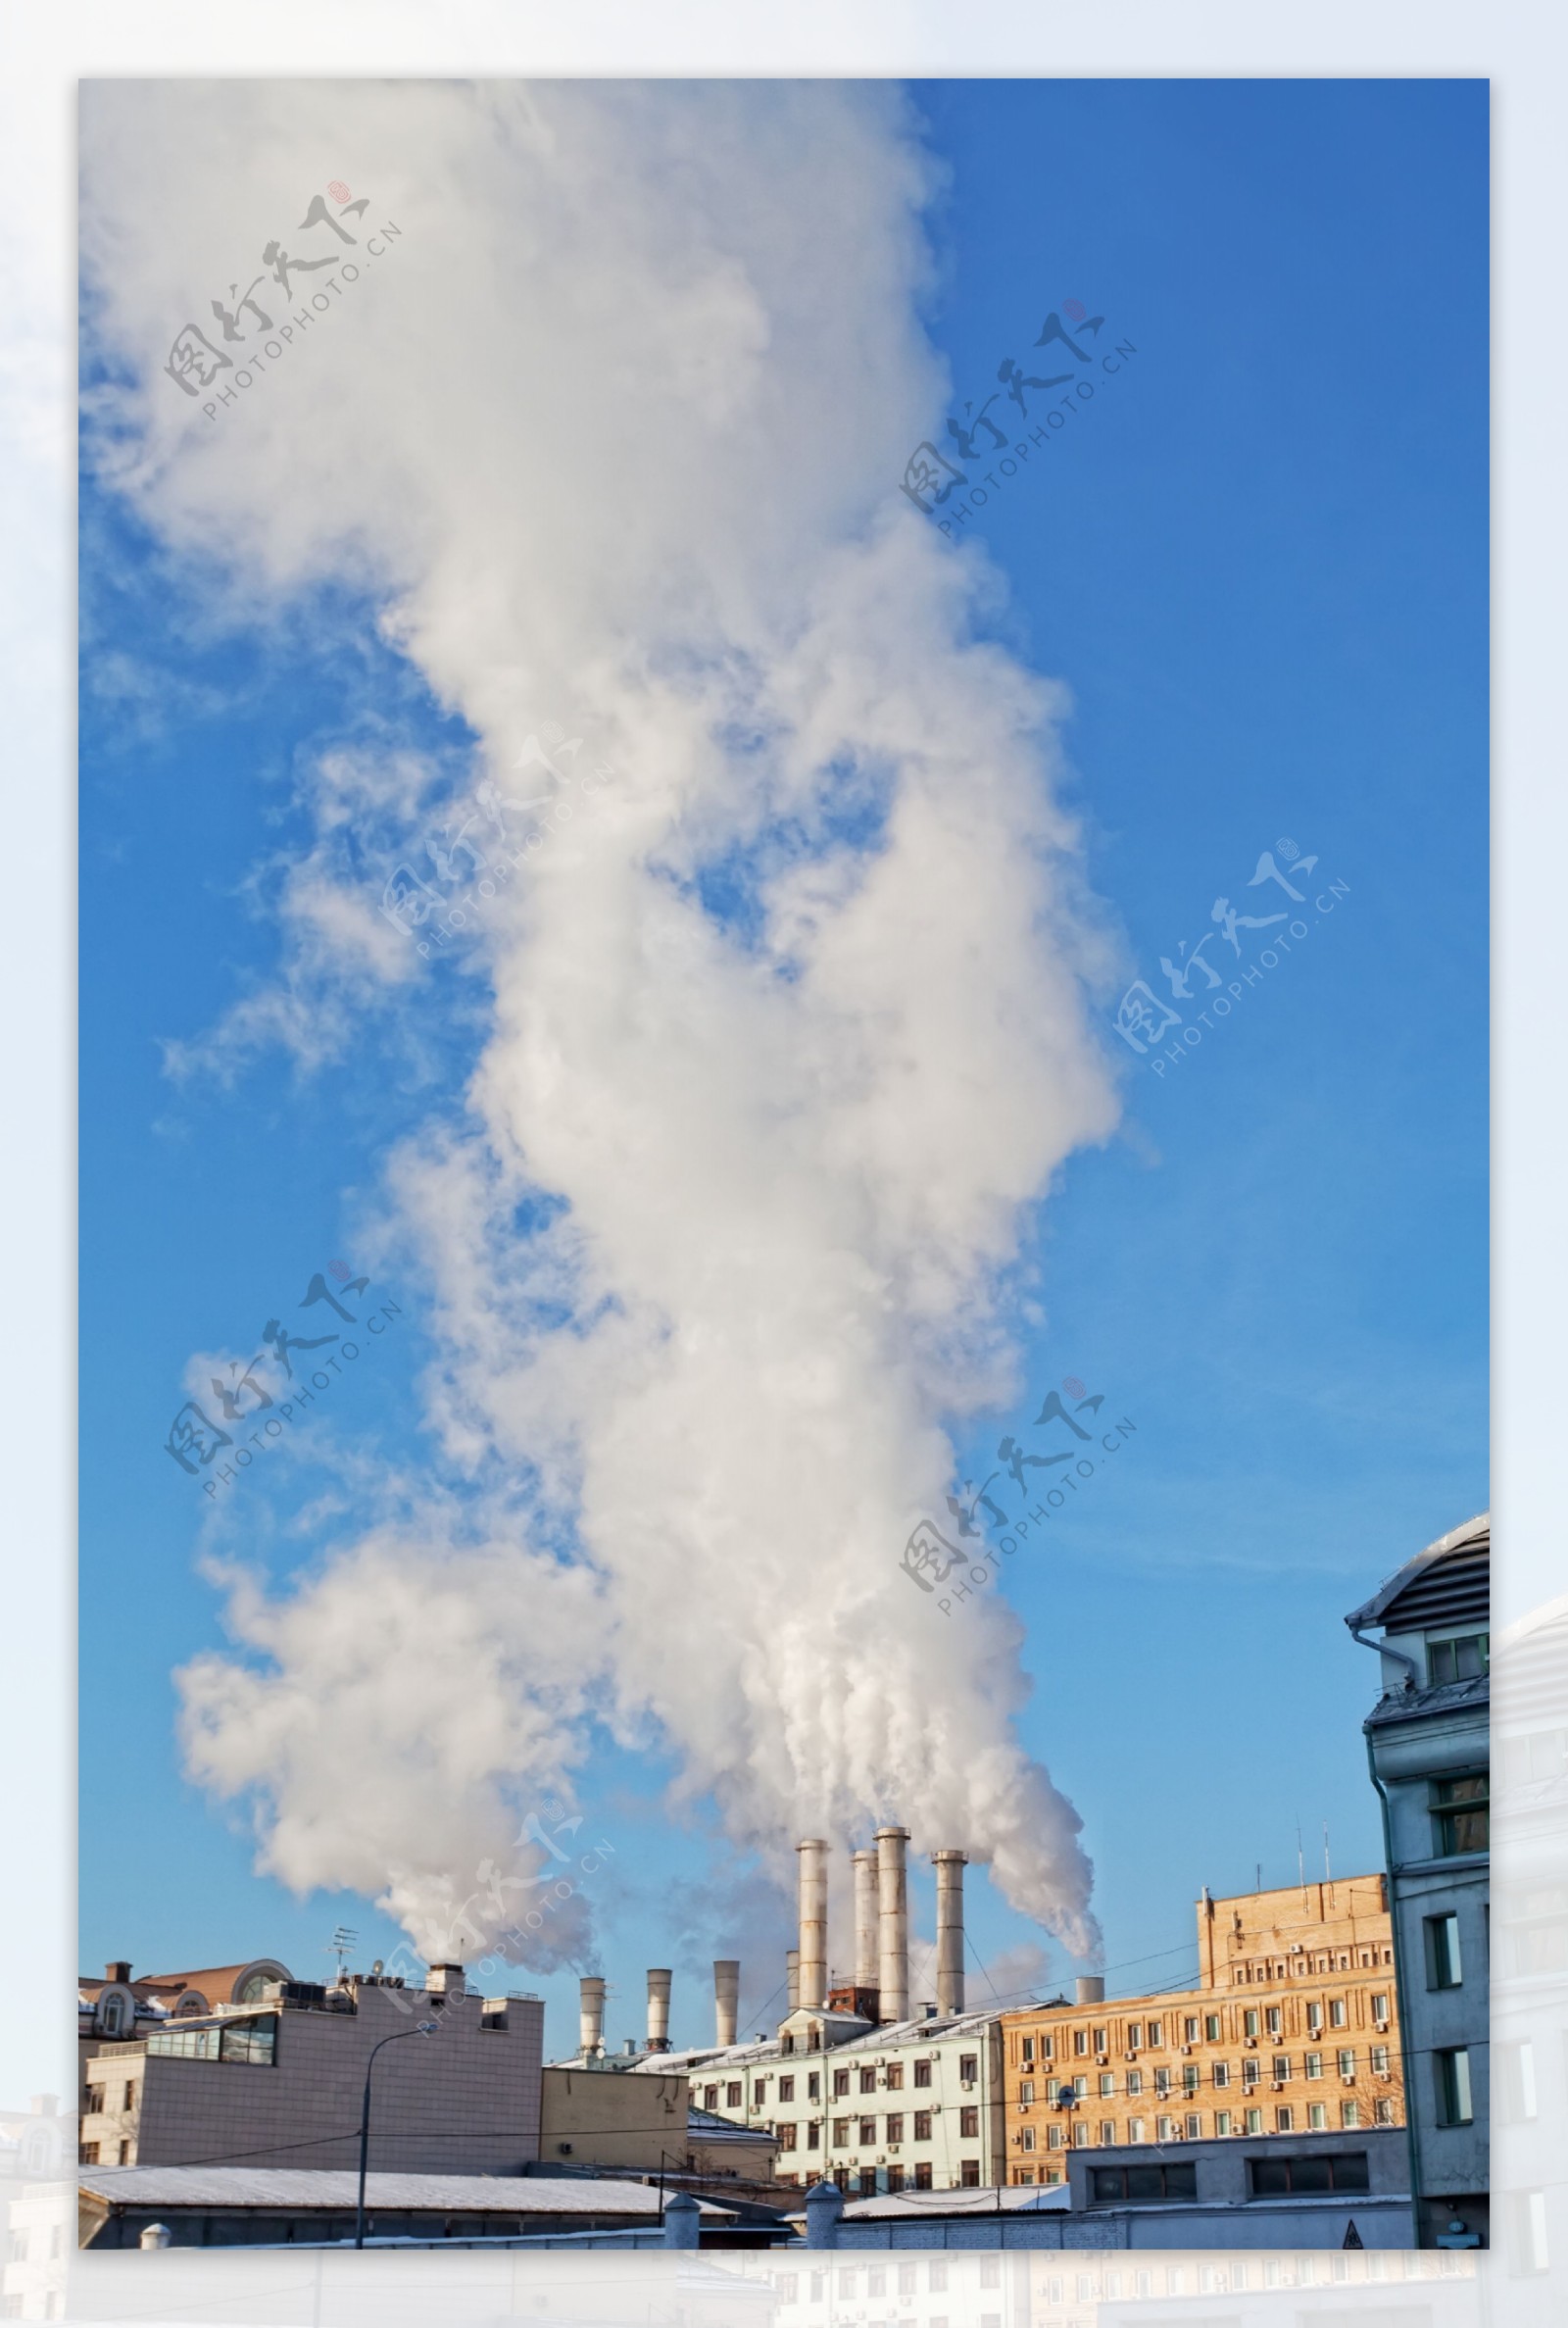 工厂排放的烟雾